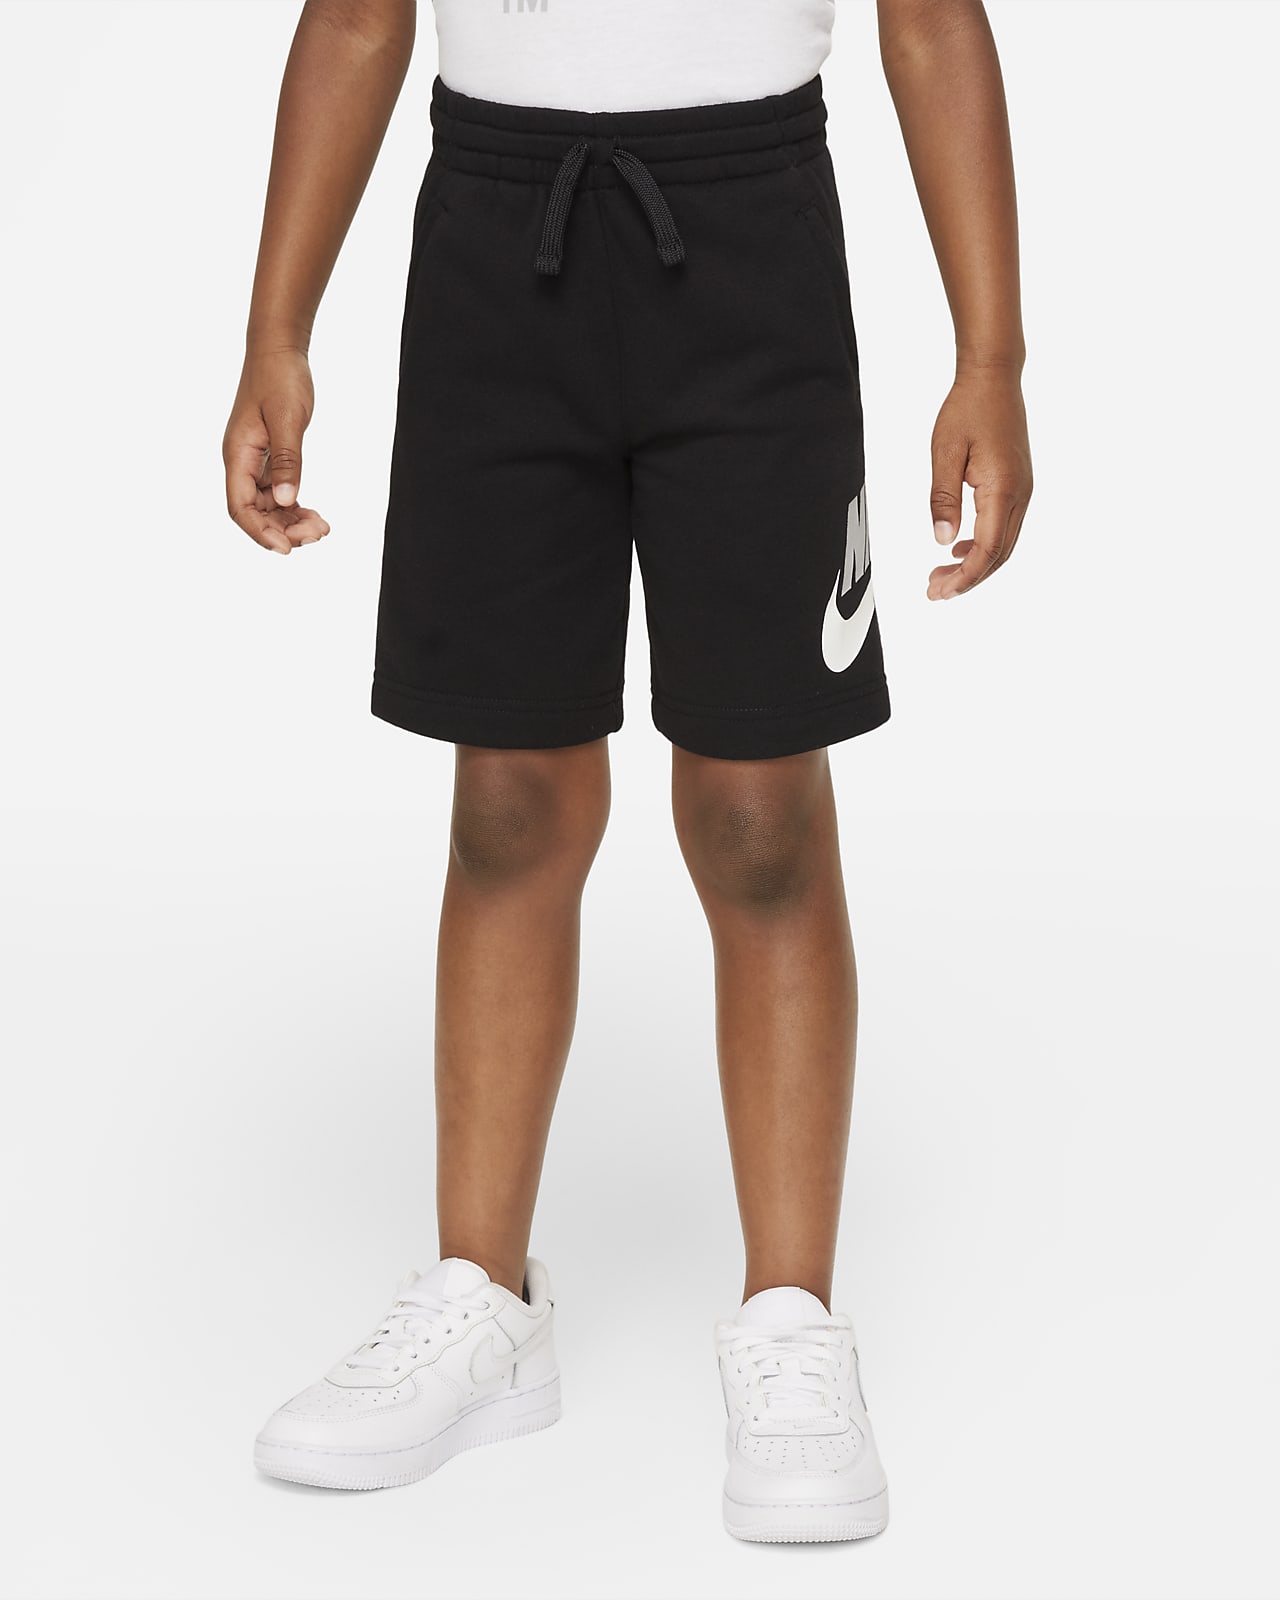 Belofte Extractie verachten Nike Younger Kids' Shorts. Nike LU